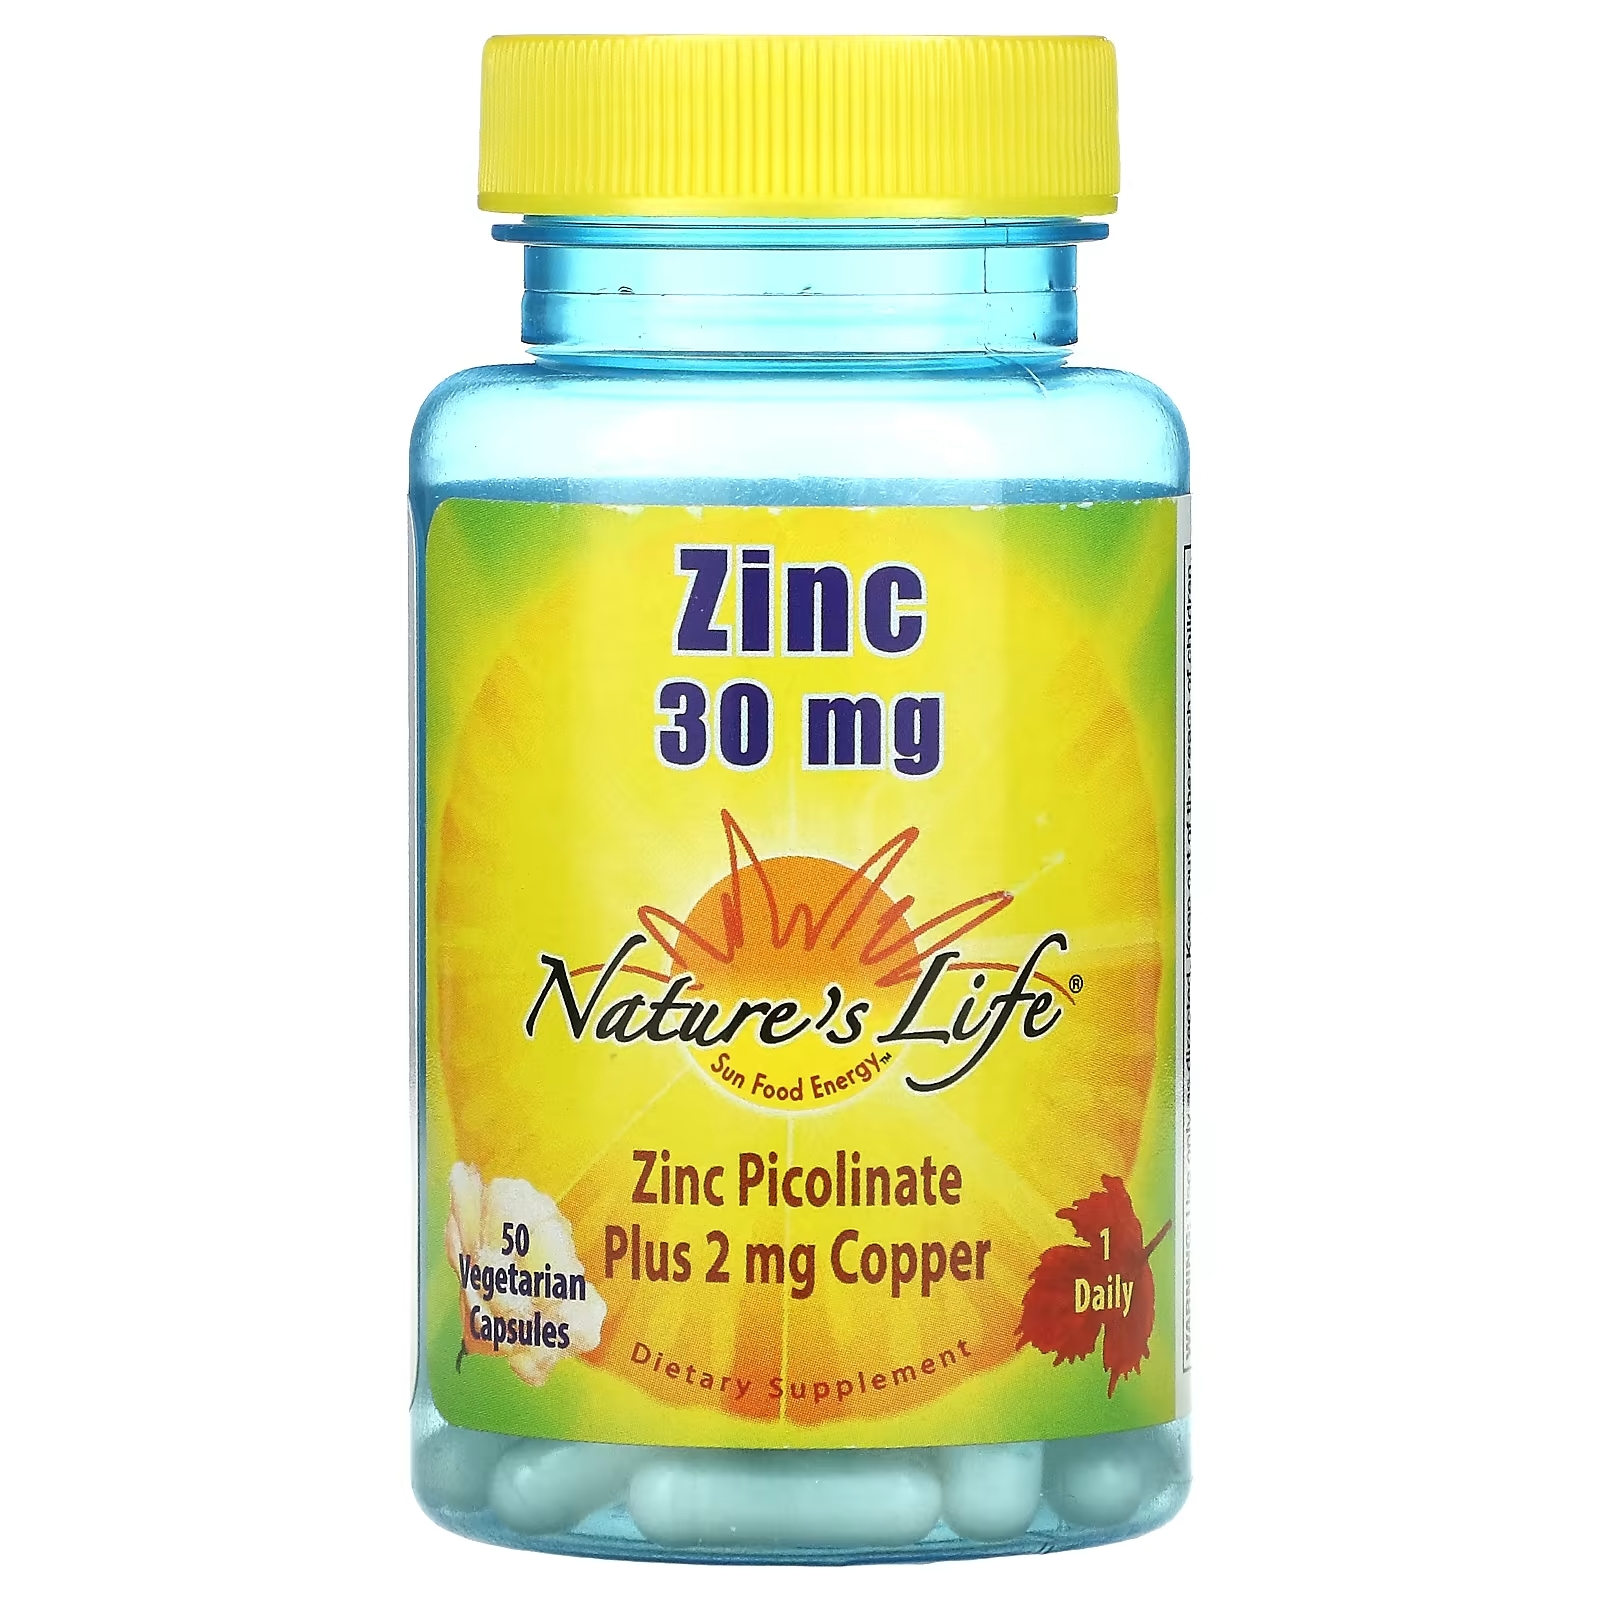 Life zinc. Цинк natures. Zinc 30 MG. Цинк лайф. Цинк с IHERB natures.